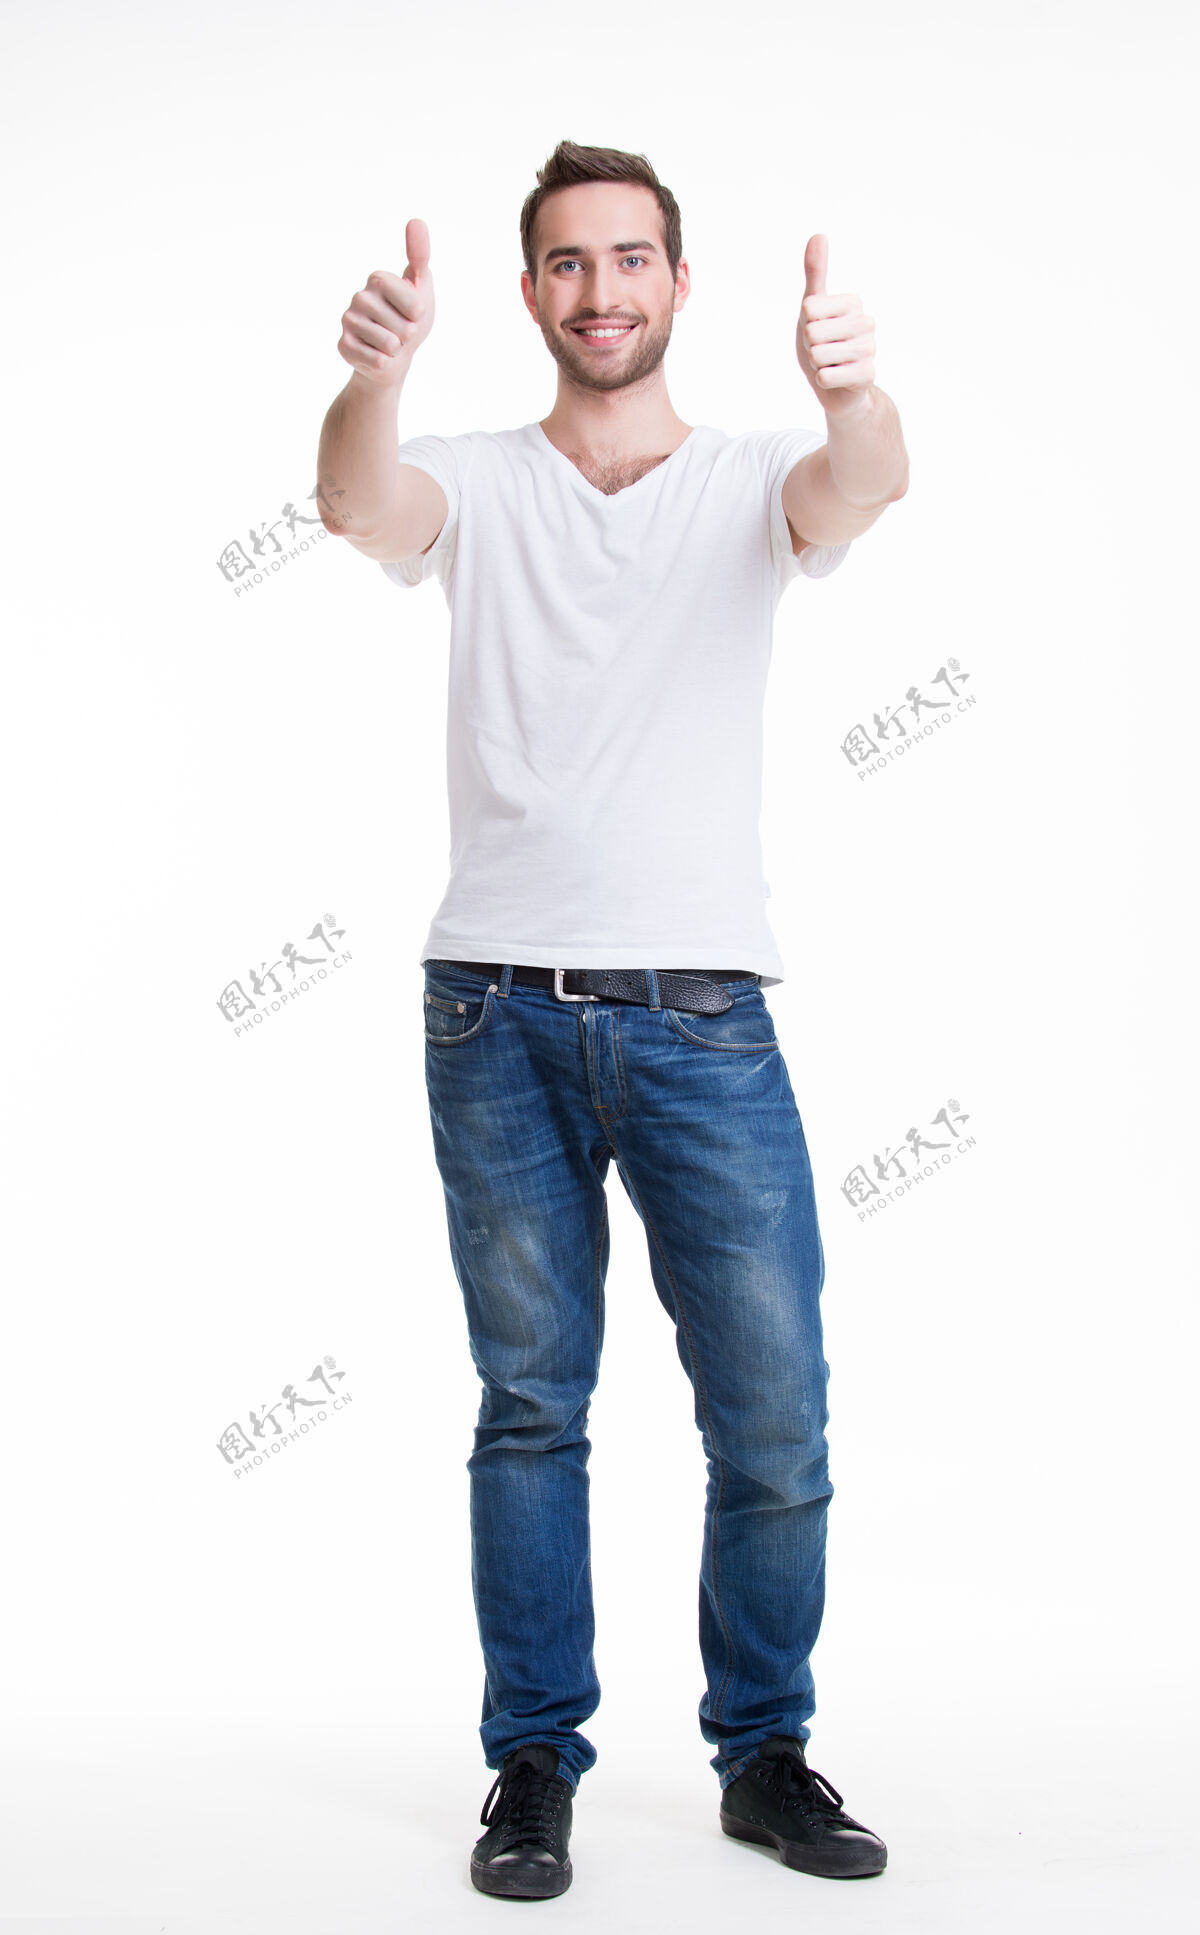 竖起大拇指年轻快乐的帅哥竖起大拇指标志着在漫不经心的成长中——孤立无援的白种人男性大拇指手势